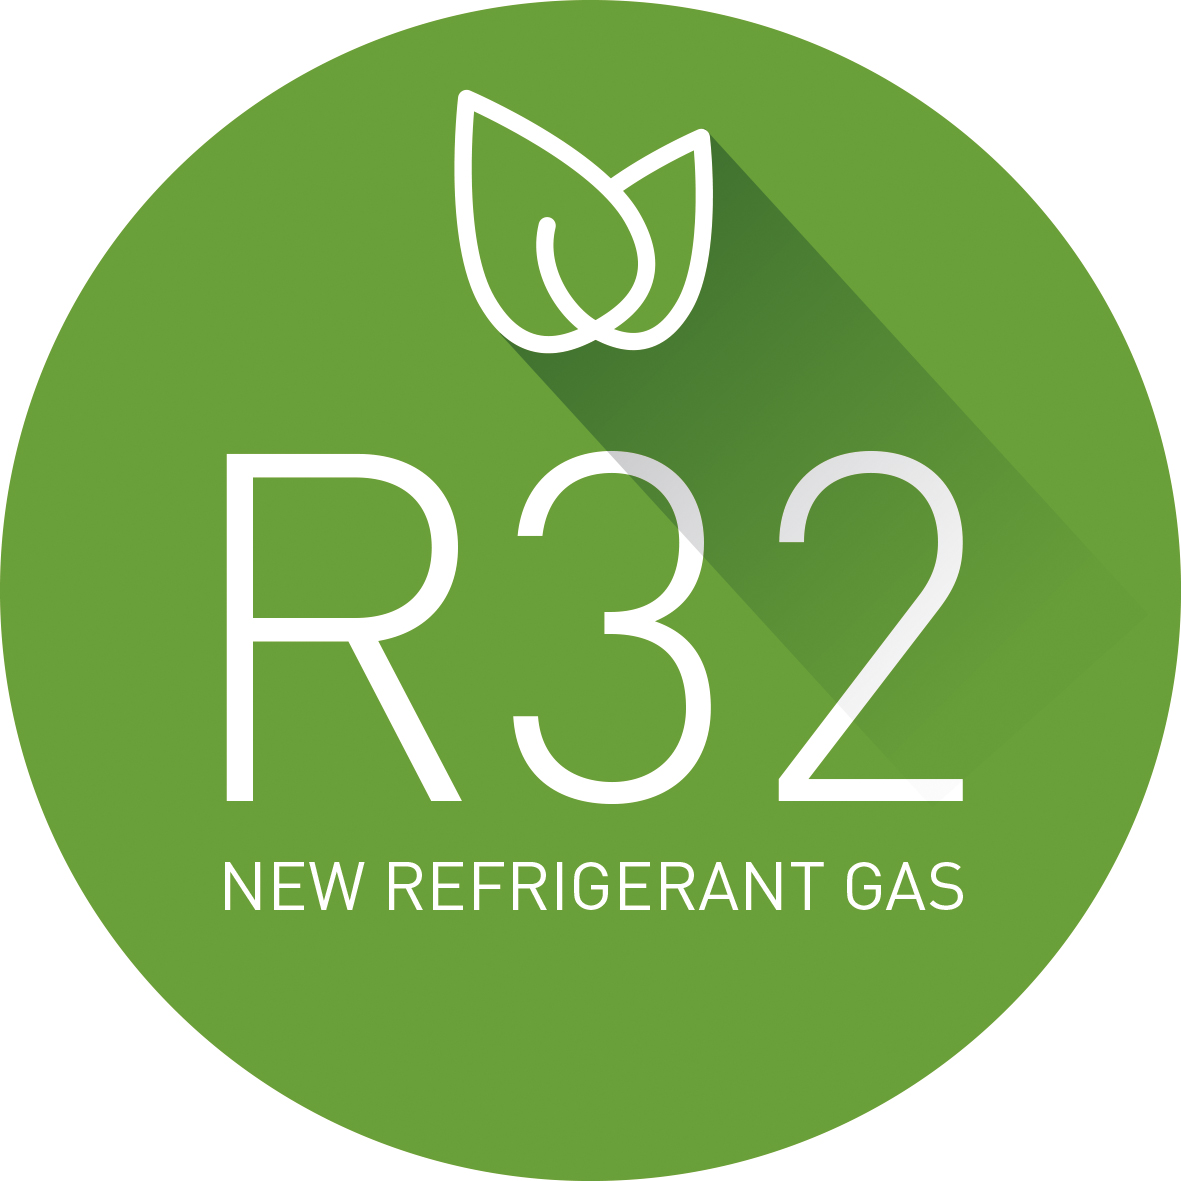 Mairo Climatización  New gas R32, environment friendly and more